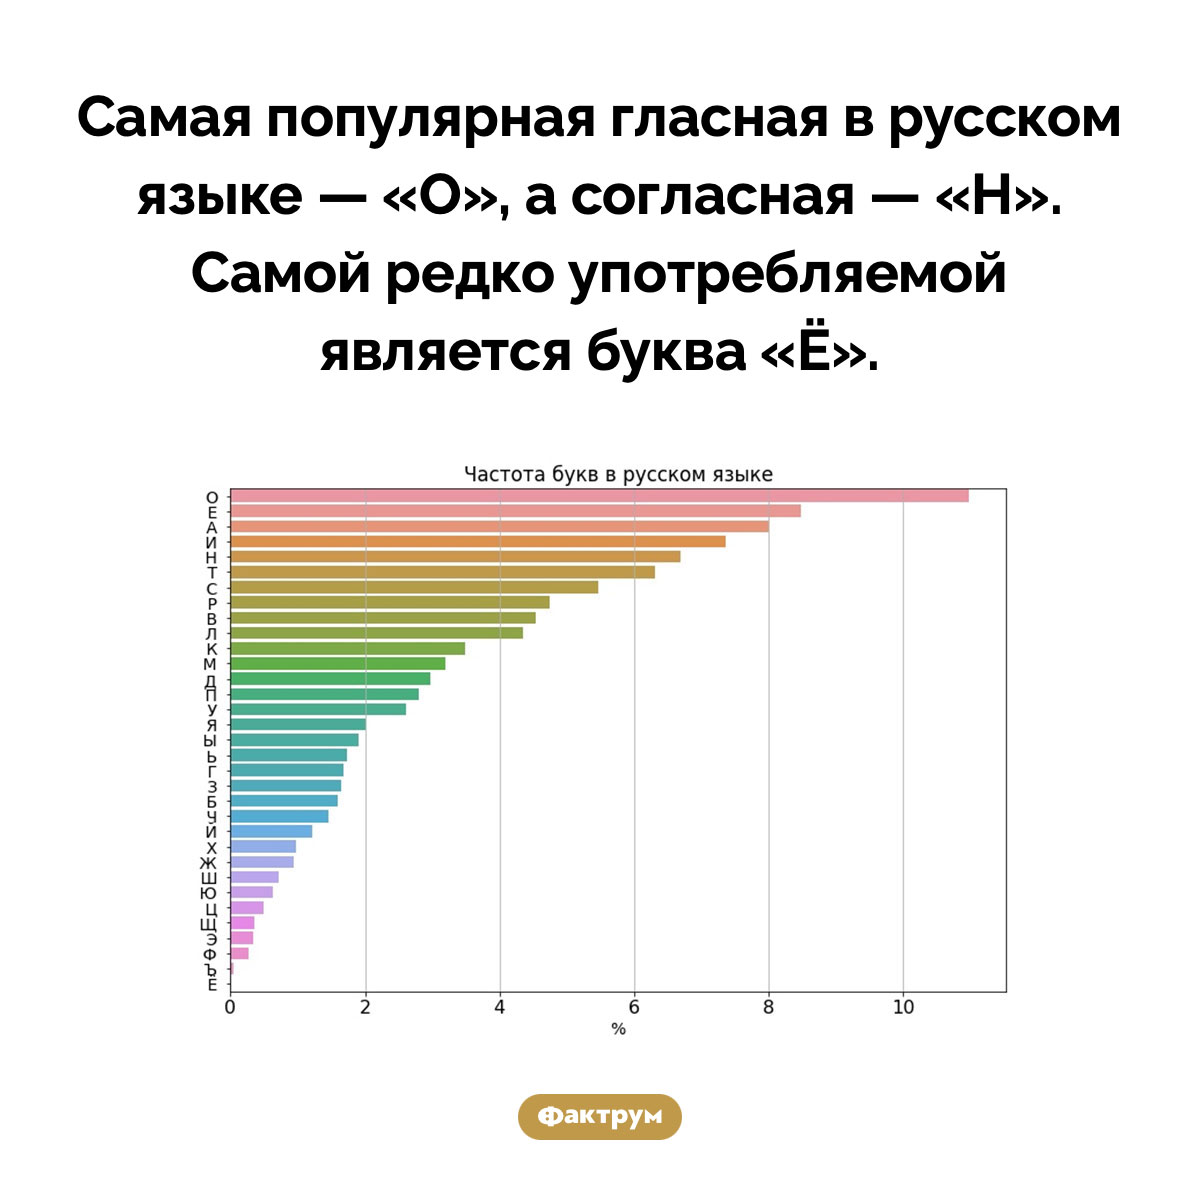 Самые популярные буквы в русском языке. Самая популярная гласная в русском языке — «О», а согласная — «Н». Самой редко употребляемой является буква «Ё».